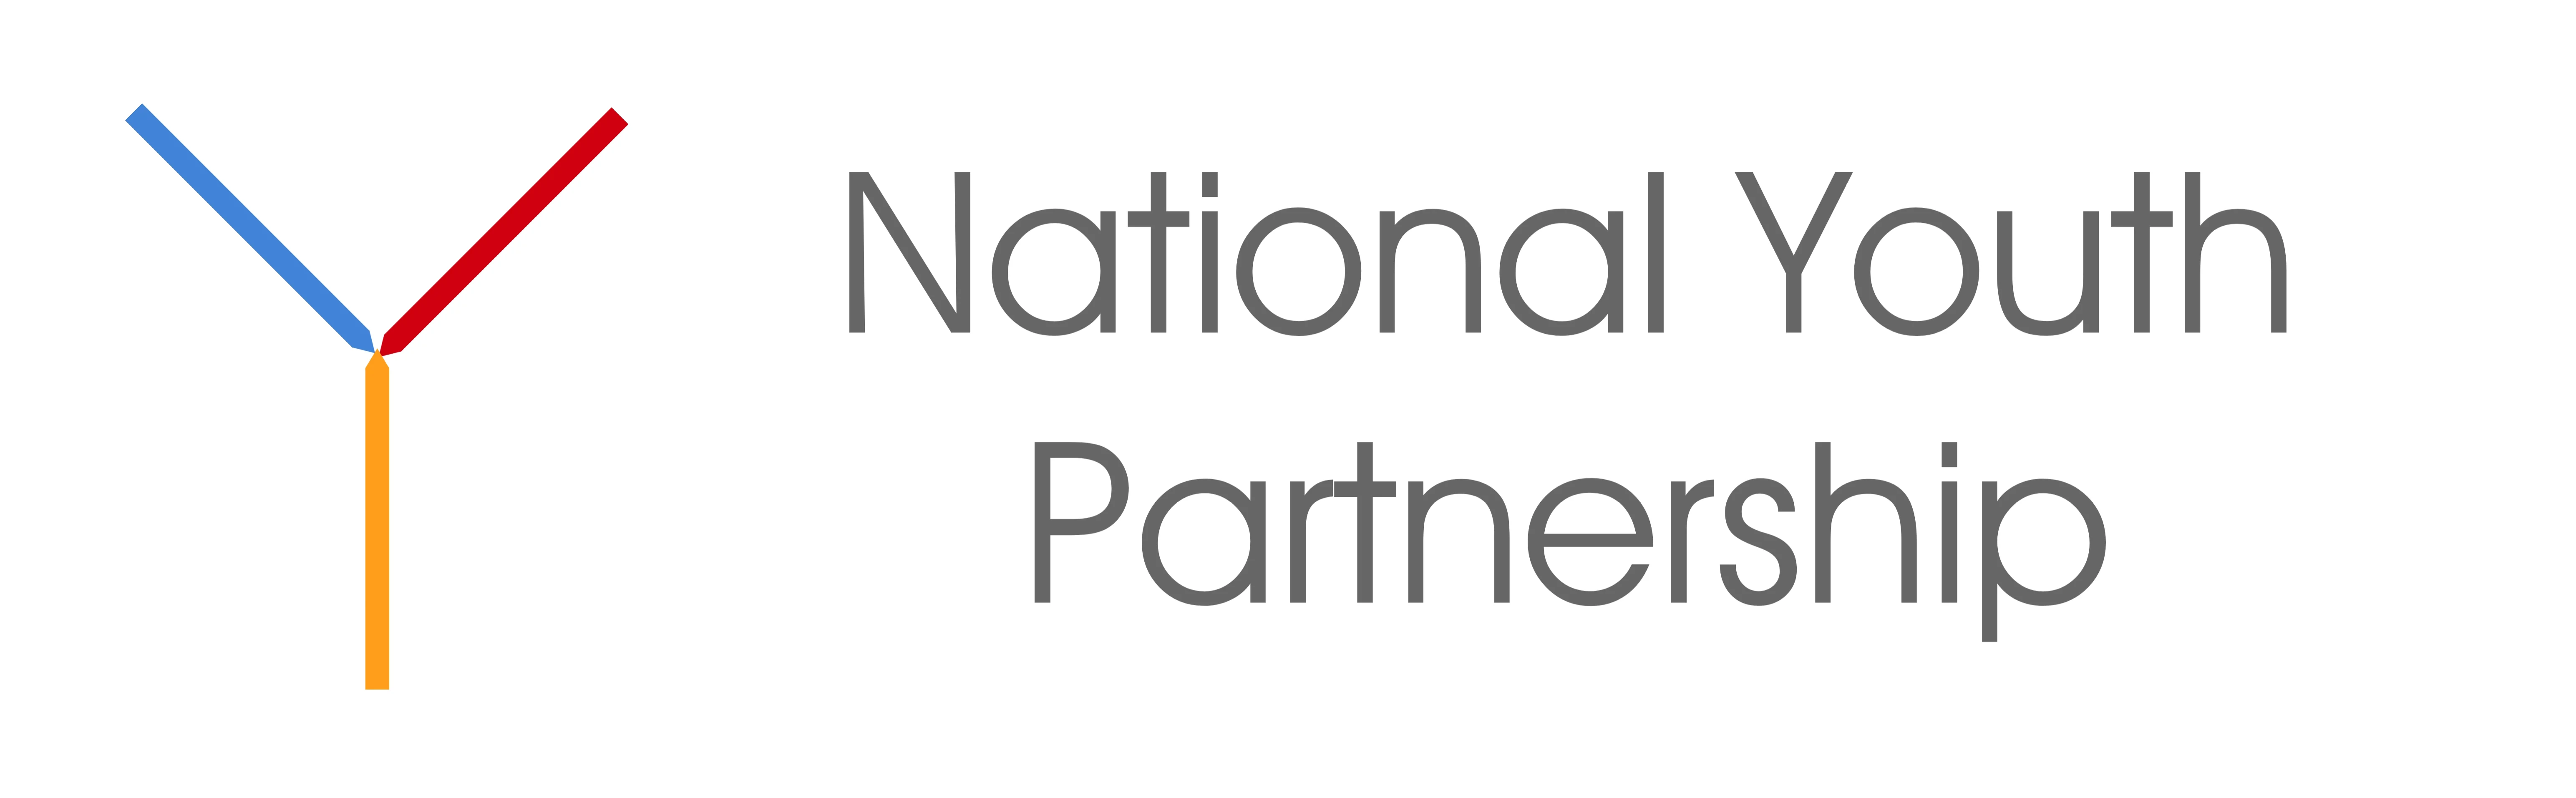 National Youth Partnership Logo